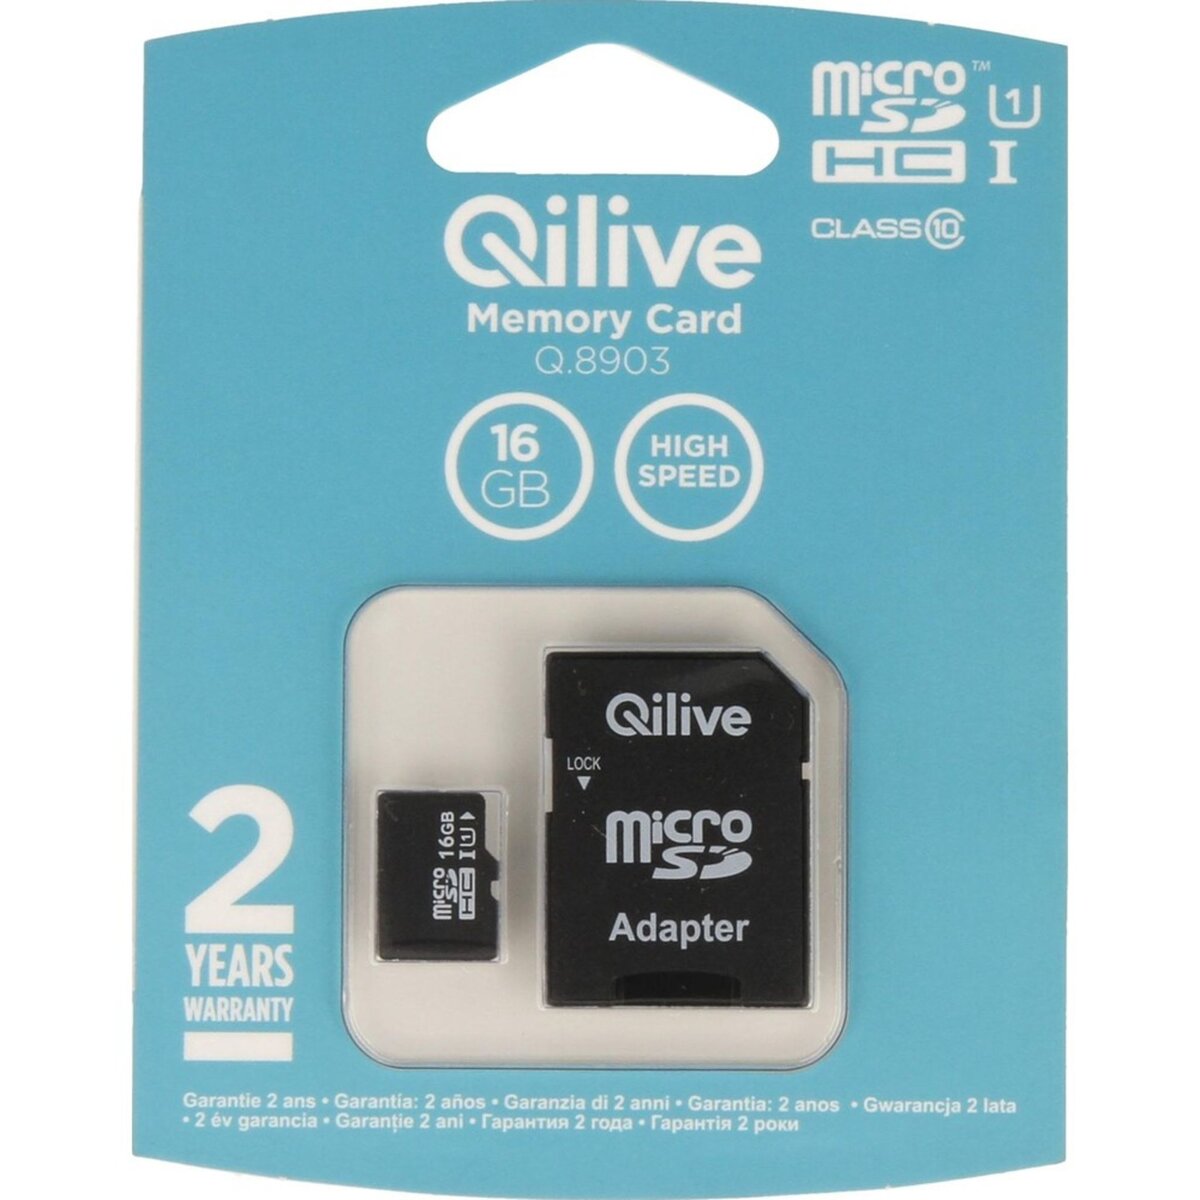 QILIVE Q.8903 - Micro SDHC 16 Go + Adaptateur - Carte mémoire